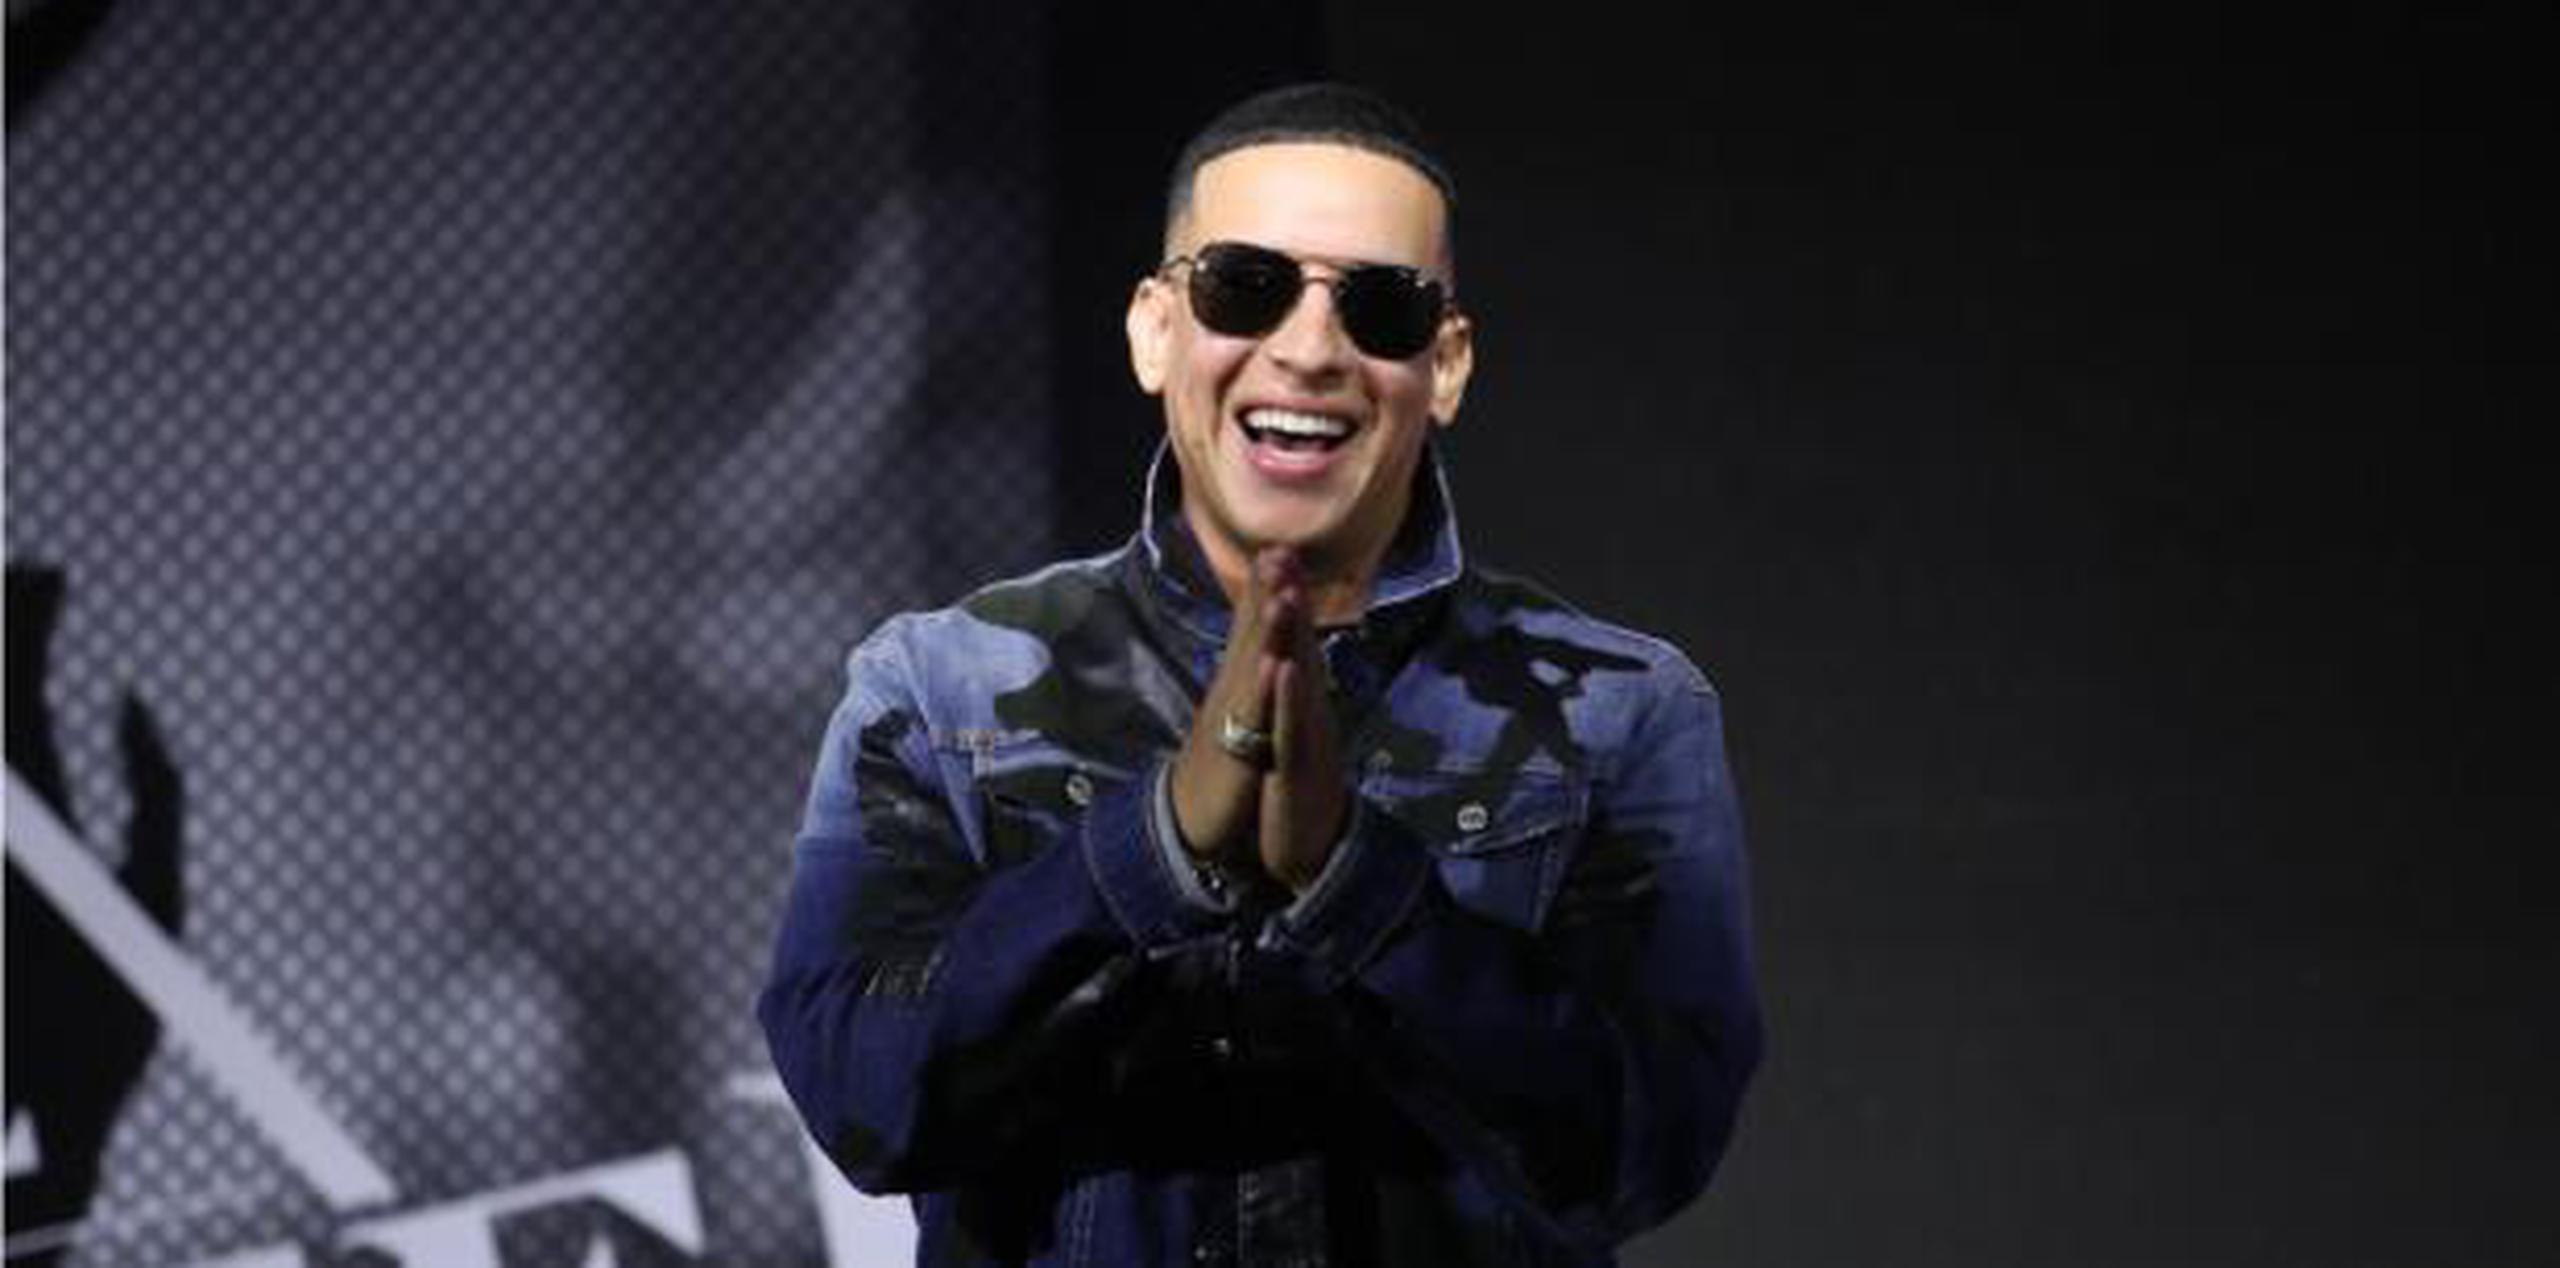 Daddy Yankee ha sido nombrado uno de los hispanos más influyentes del mundo por CNN y Time Magazine. (juan.martinez@gfrmedia.com)